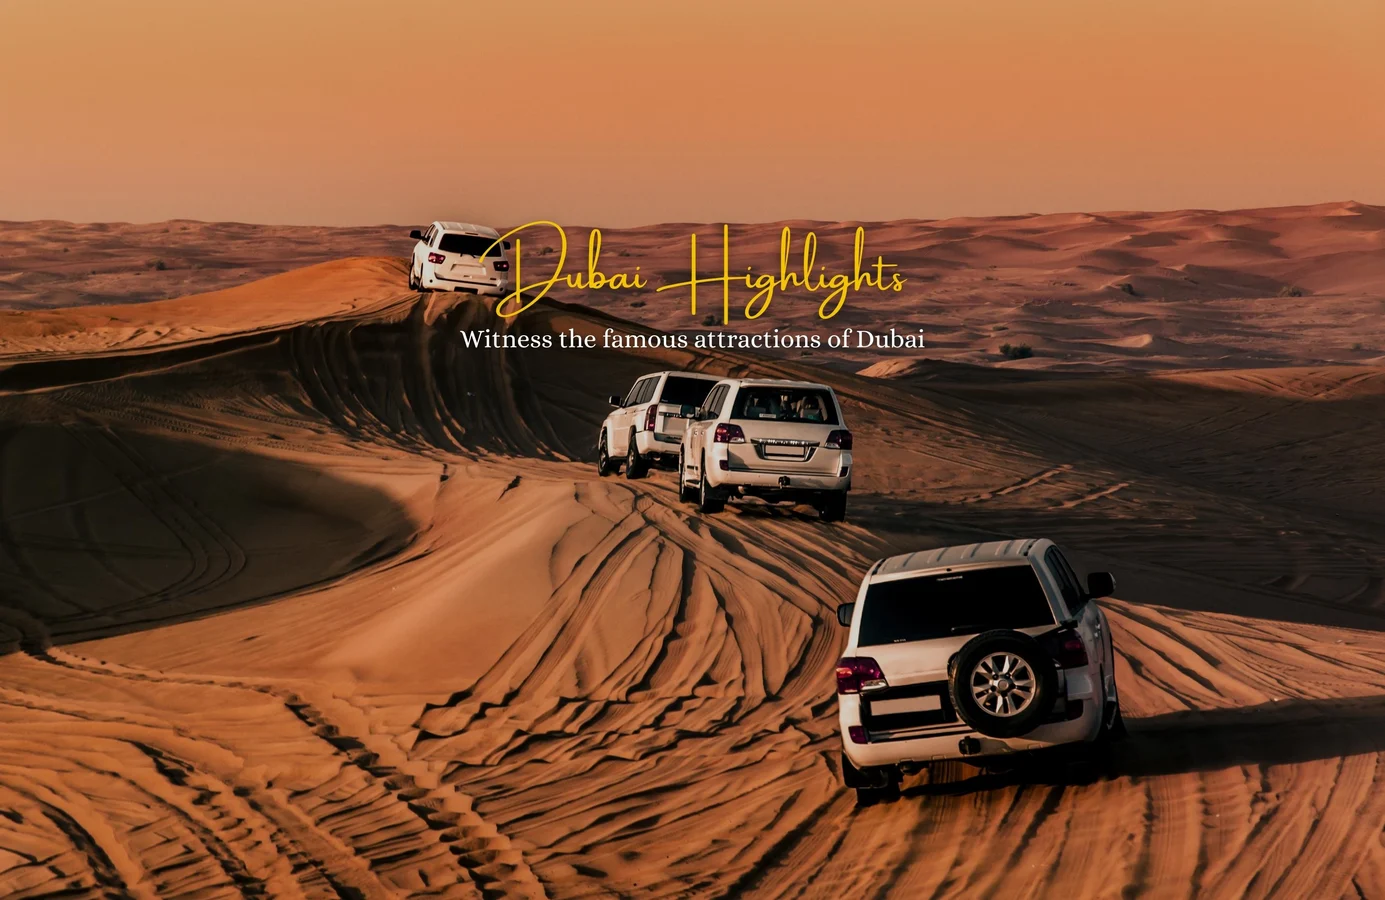 Dubai Highlights